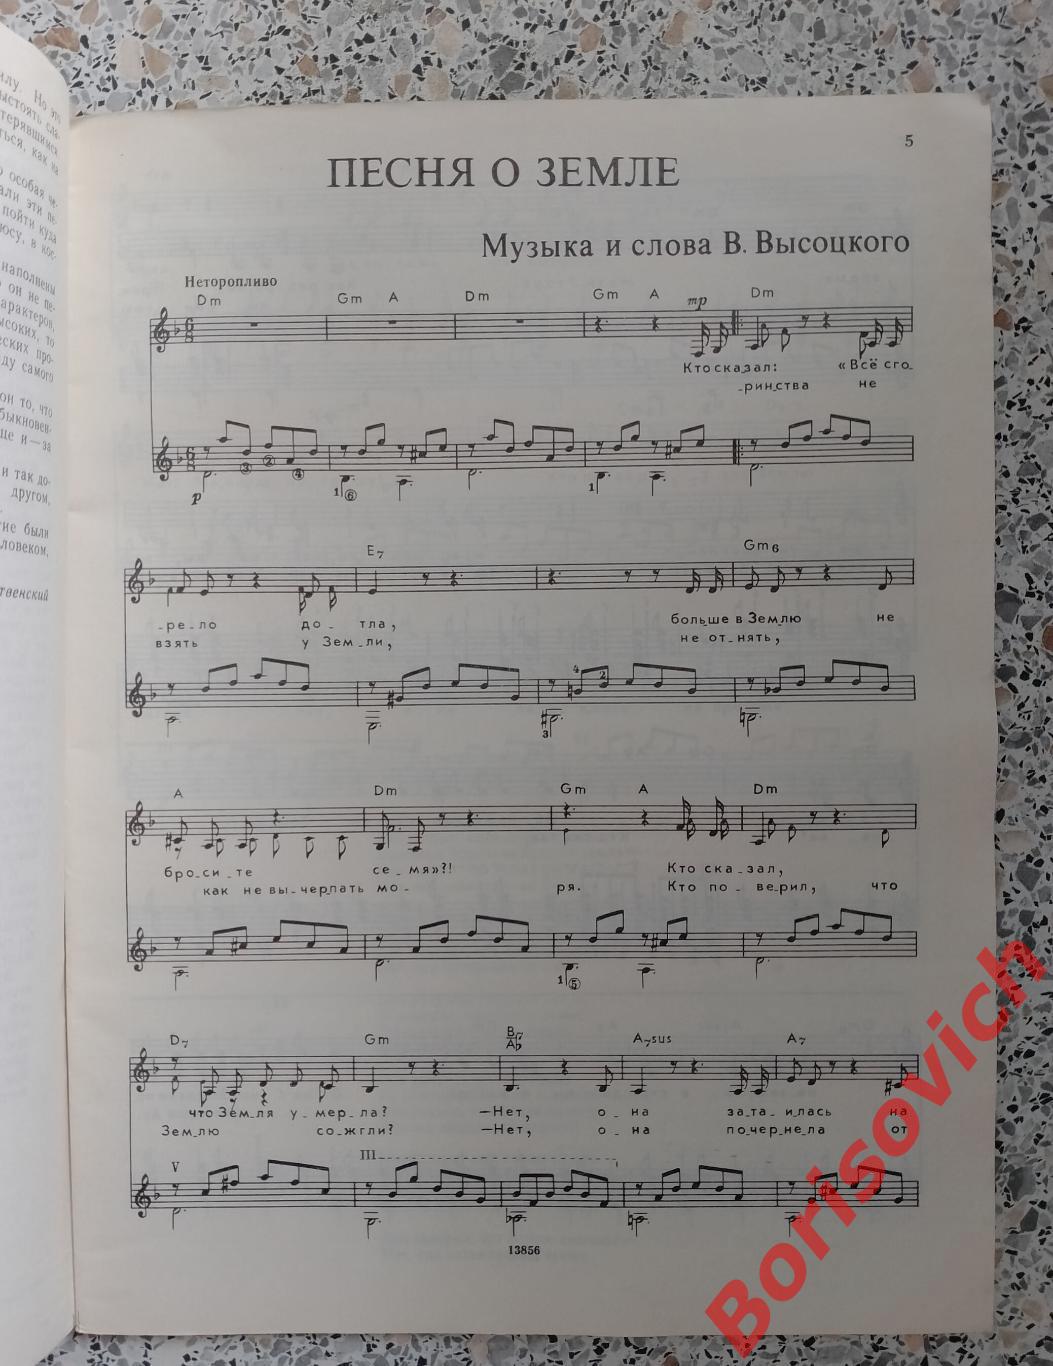 ПОЁТ ВЛАДИМИР ВЫСОЦКИЙ Песни для голоса в сопровождении гитары 1989 г 64 стр. 38 1